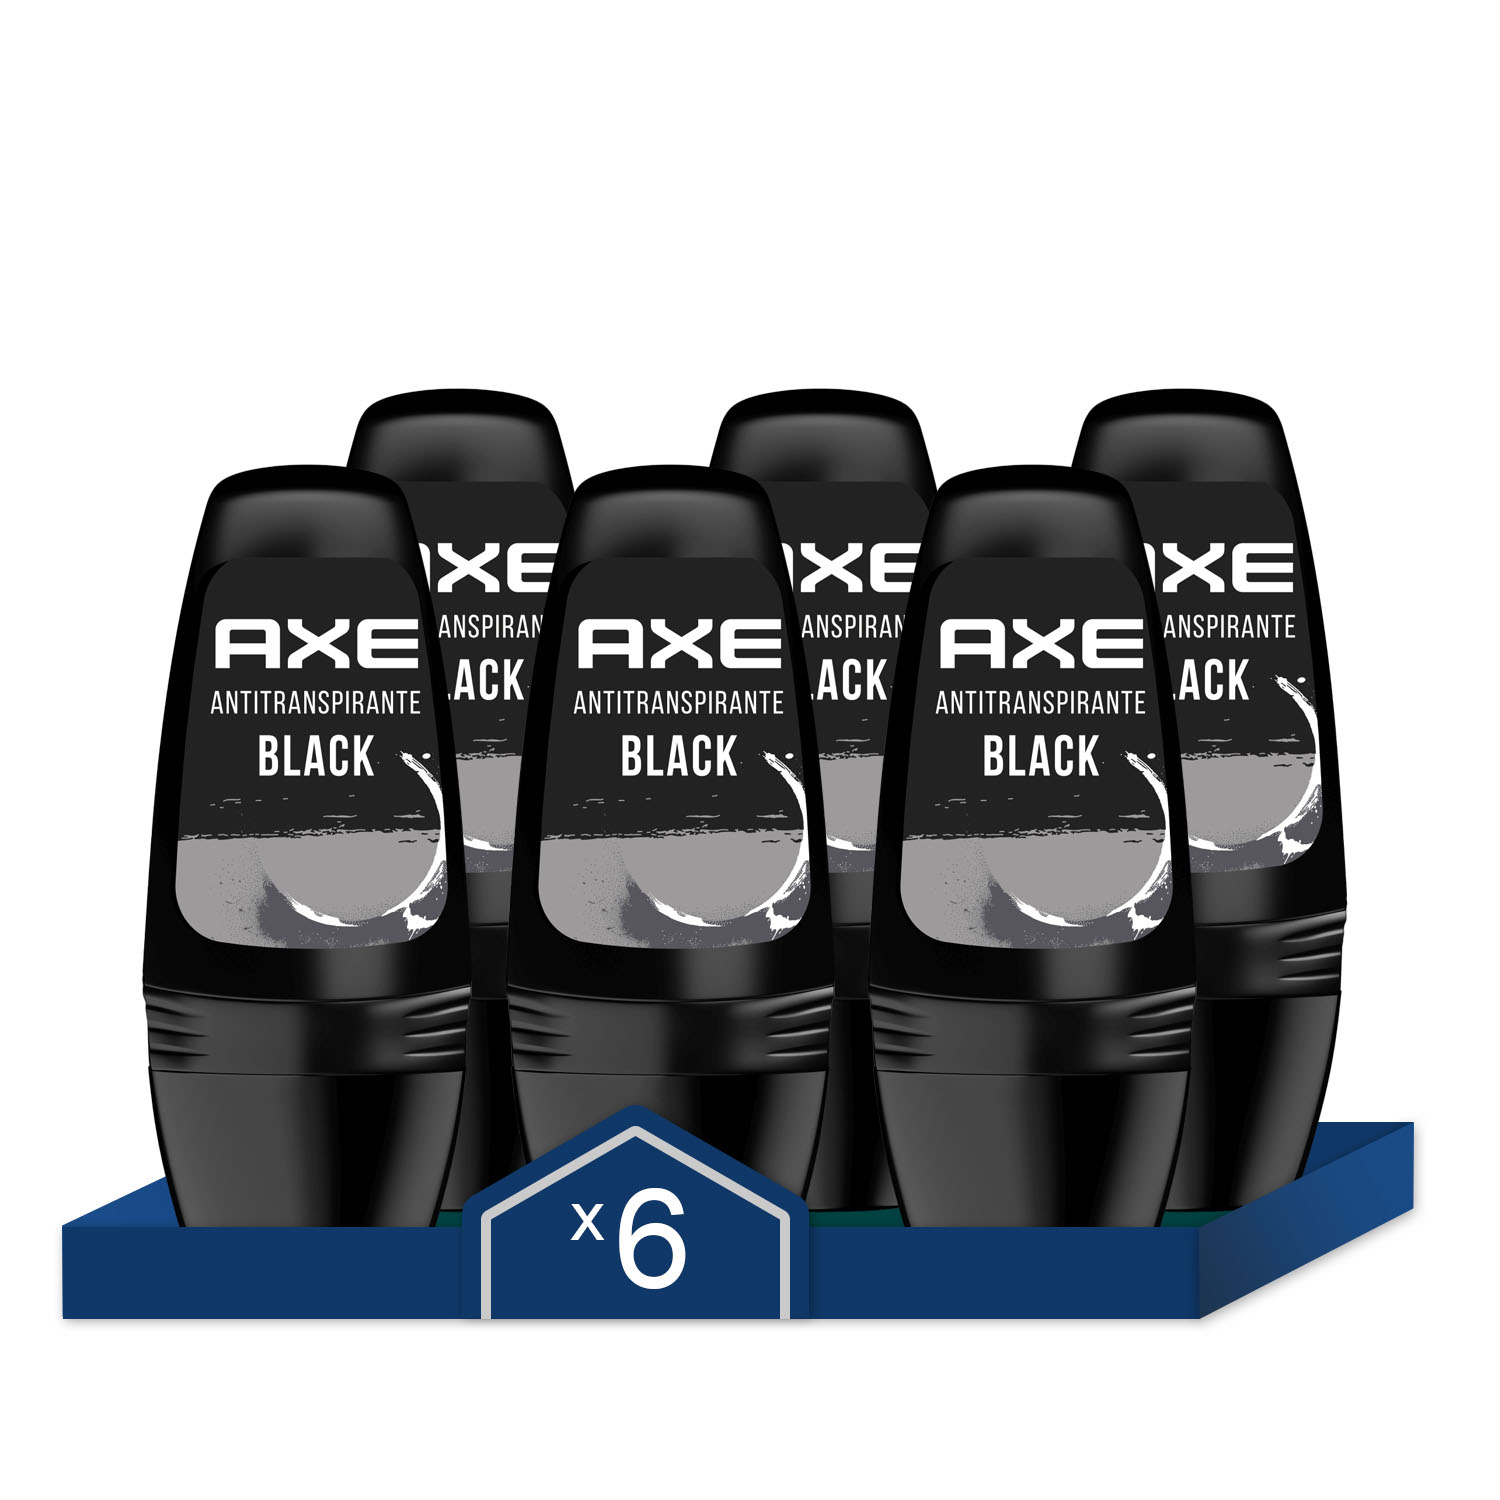 Axe - Axe Desodorante Roll On Black Antitranspirante 50ml - Pack de 6